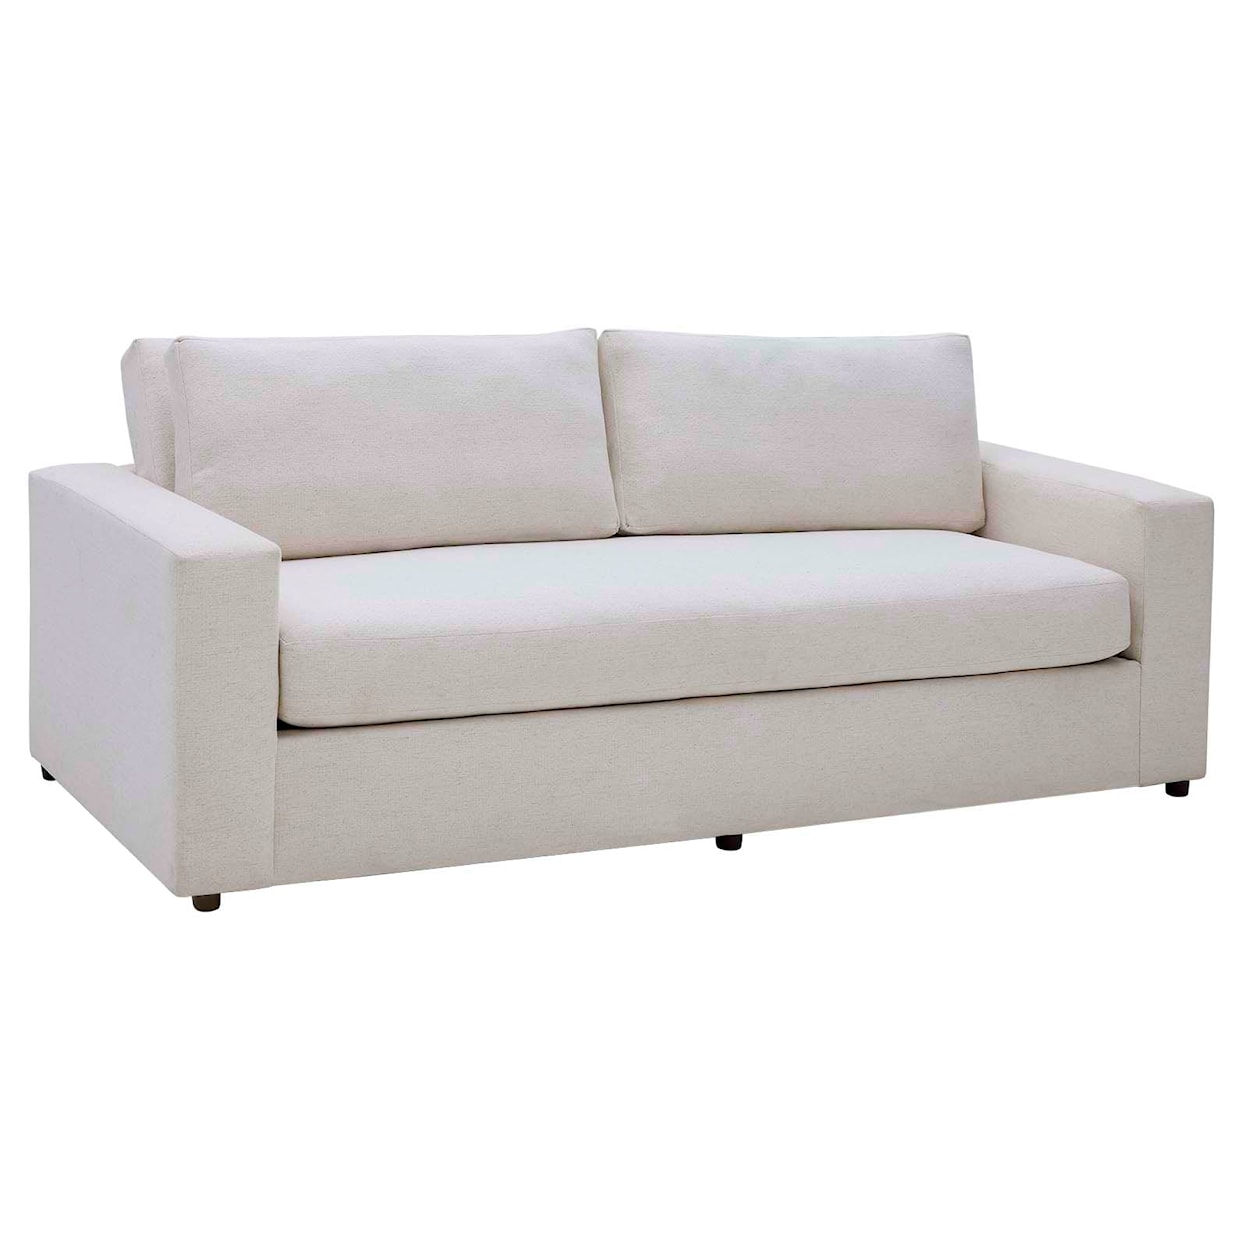 Modway Avendale Upscale Linen Blend Sofa